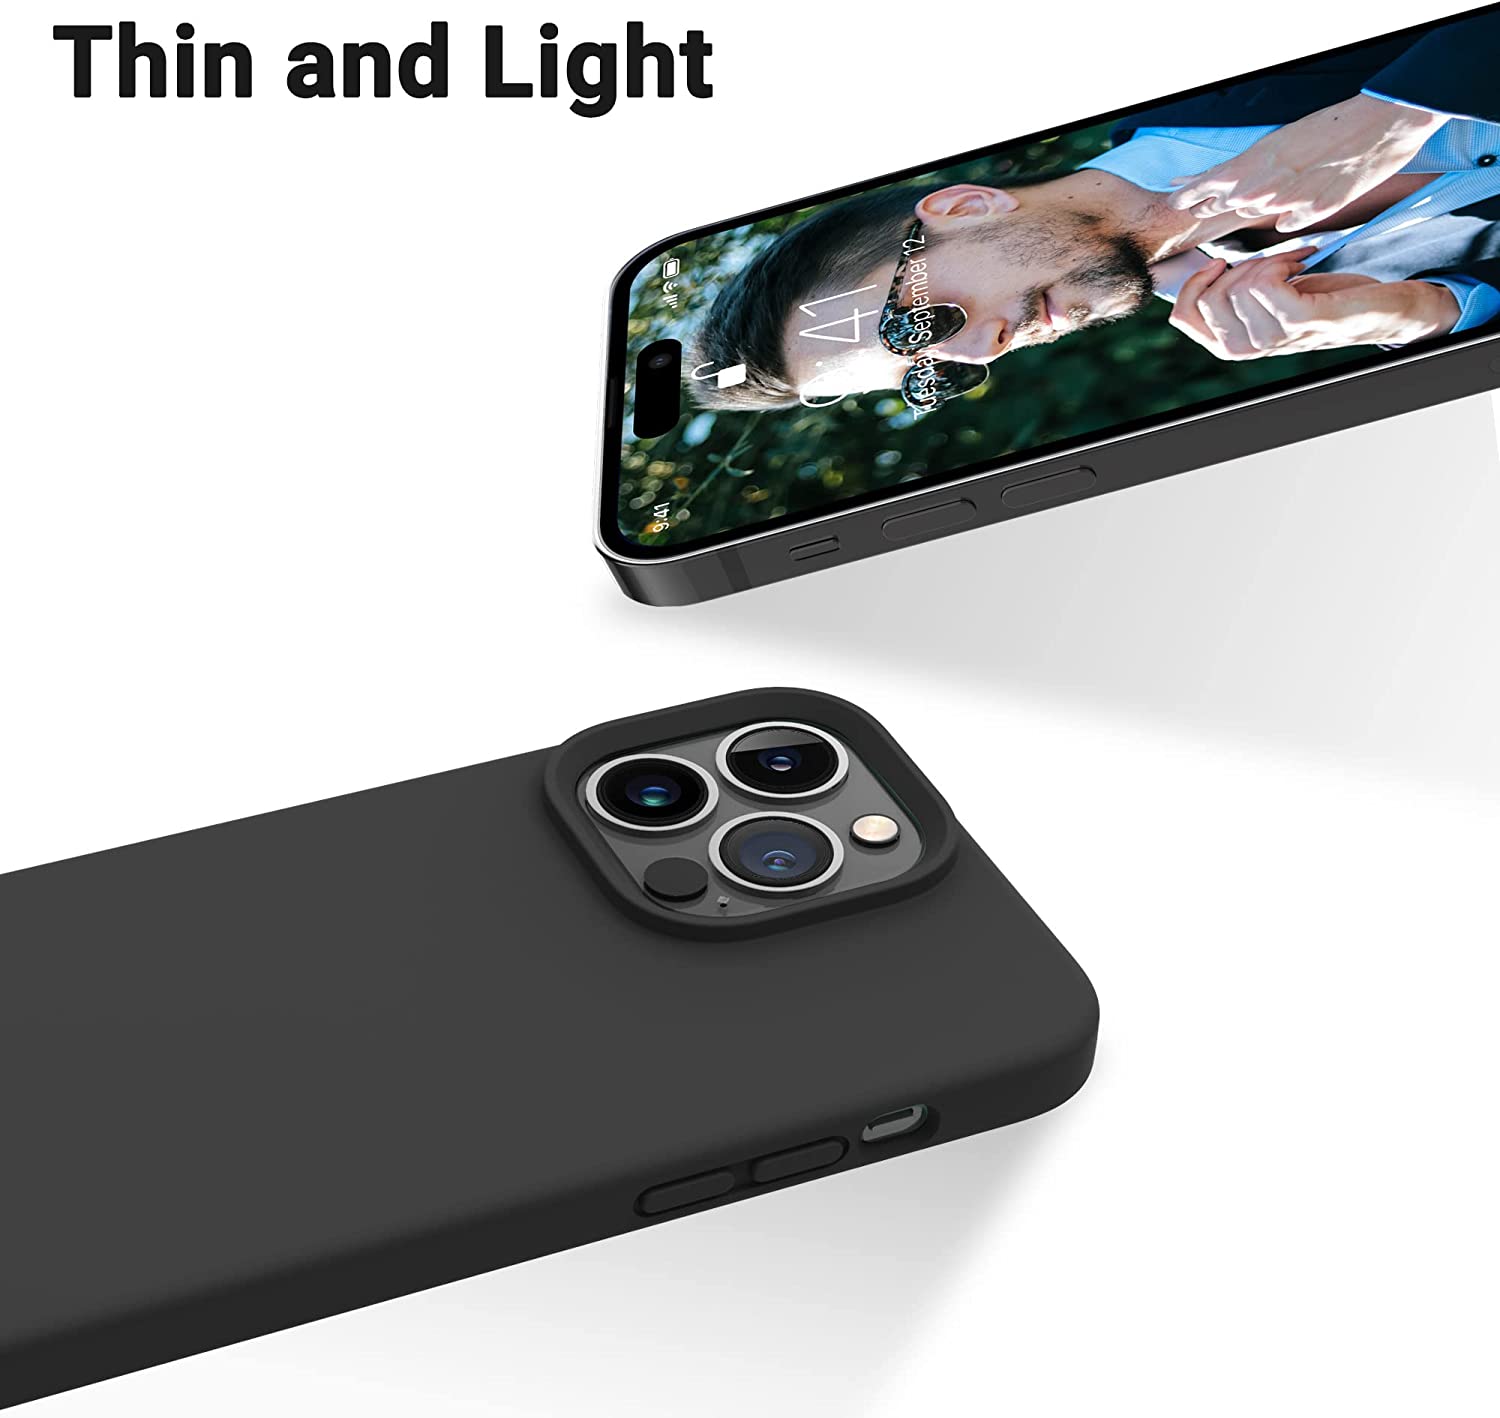 Ốp lưng silicon case cho iPhone 14 Pro Max (6.7 inch) siêu mỏng 0.3mm chống bám bẩn hiệu Memumi Liquid mặt lưng siêu mềm mịn, có gờ bảo vệ camera - hàng nhập khẩu